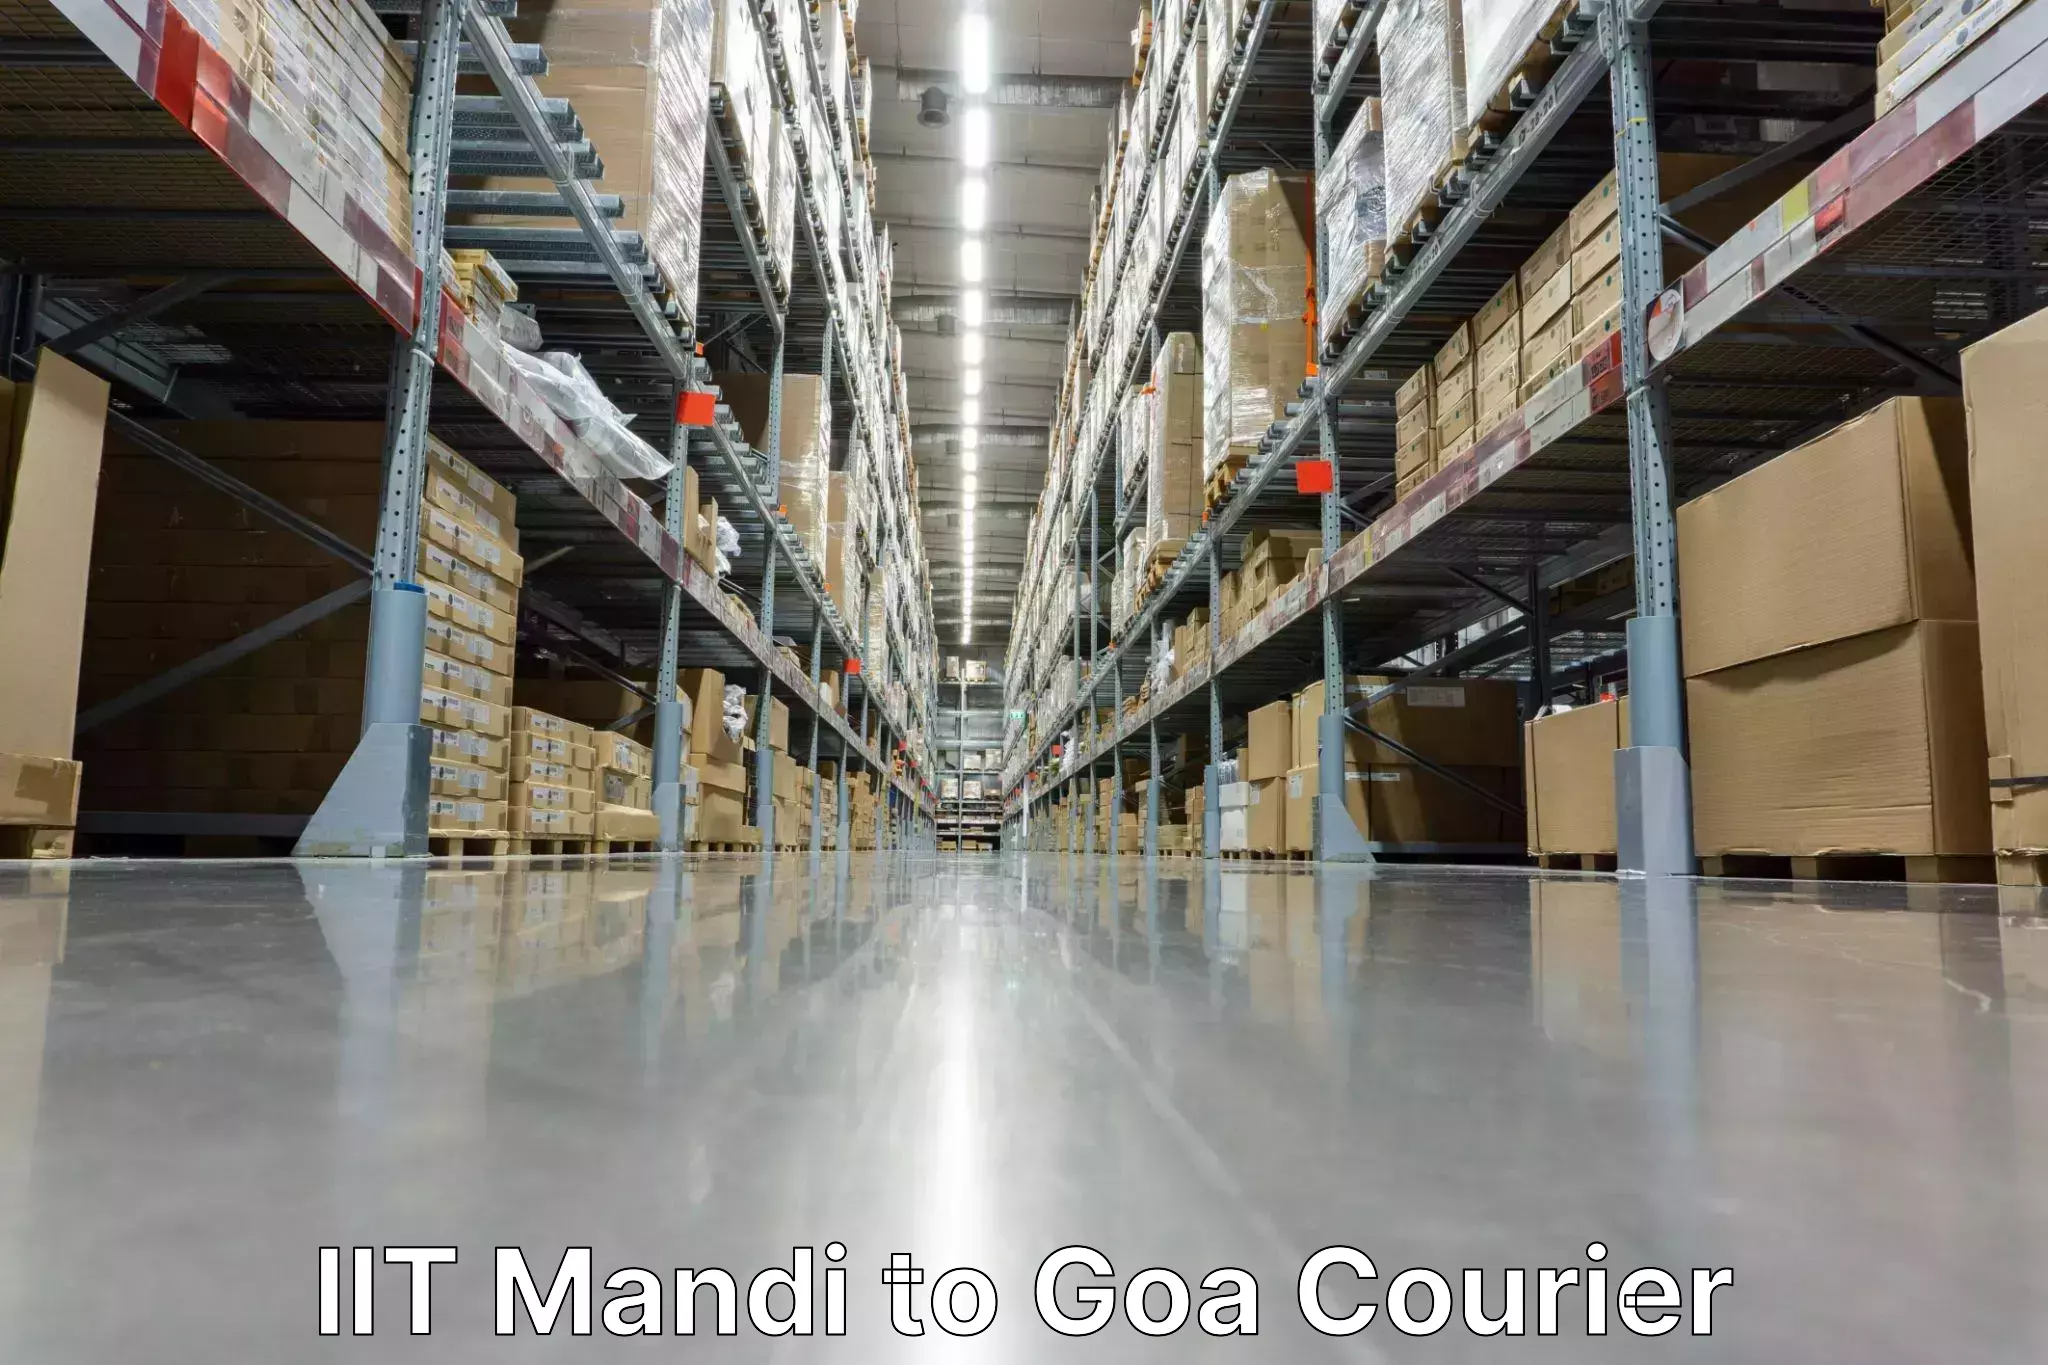 Door-to-door freight service IIT Mandi to Goa